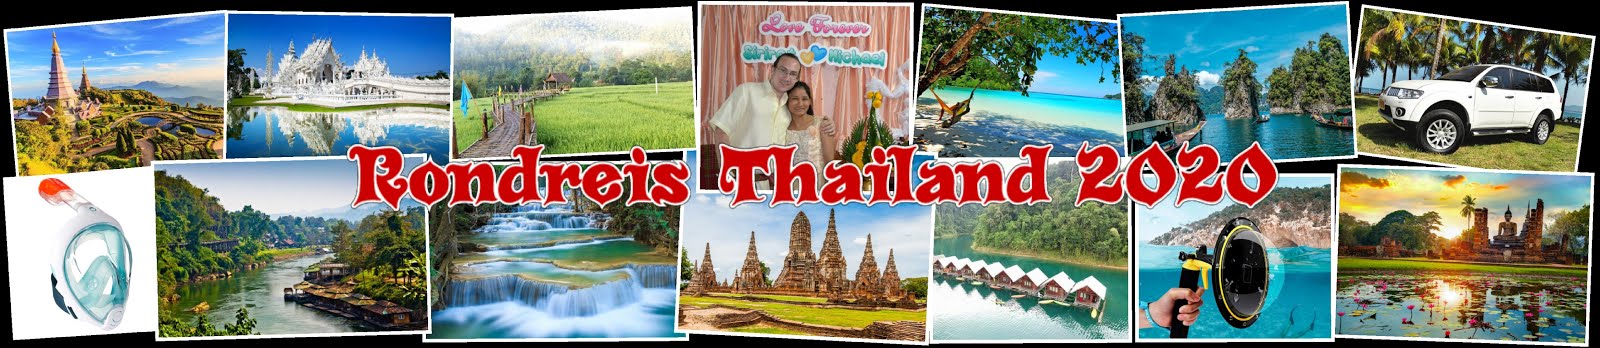 Rondreis Thailand 2020